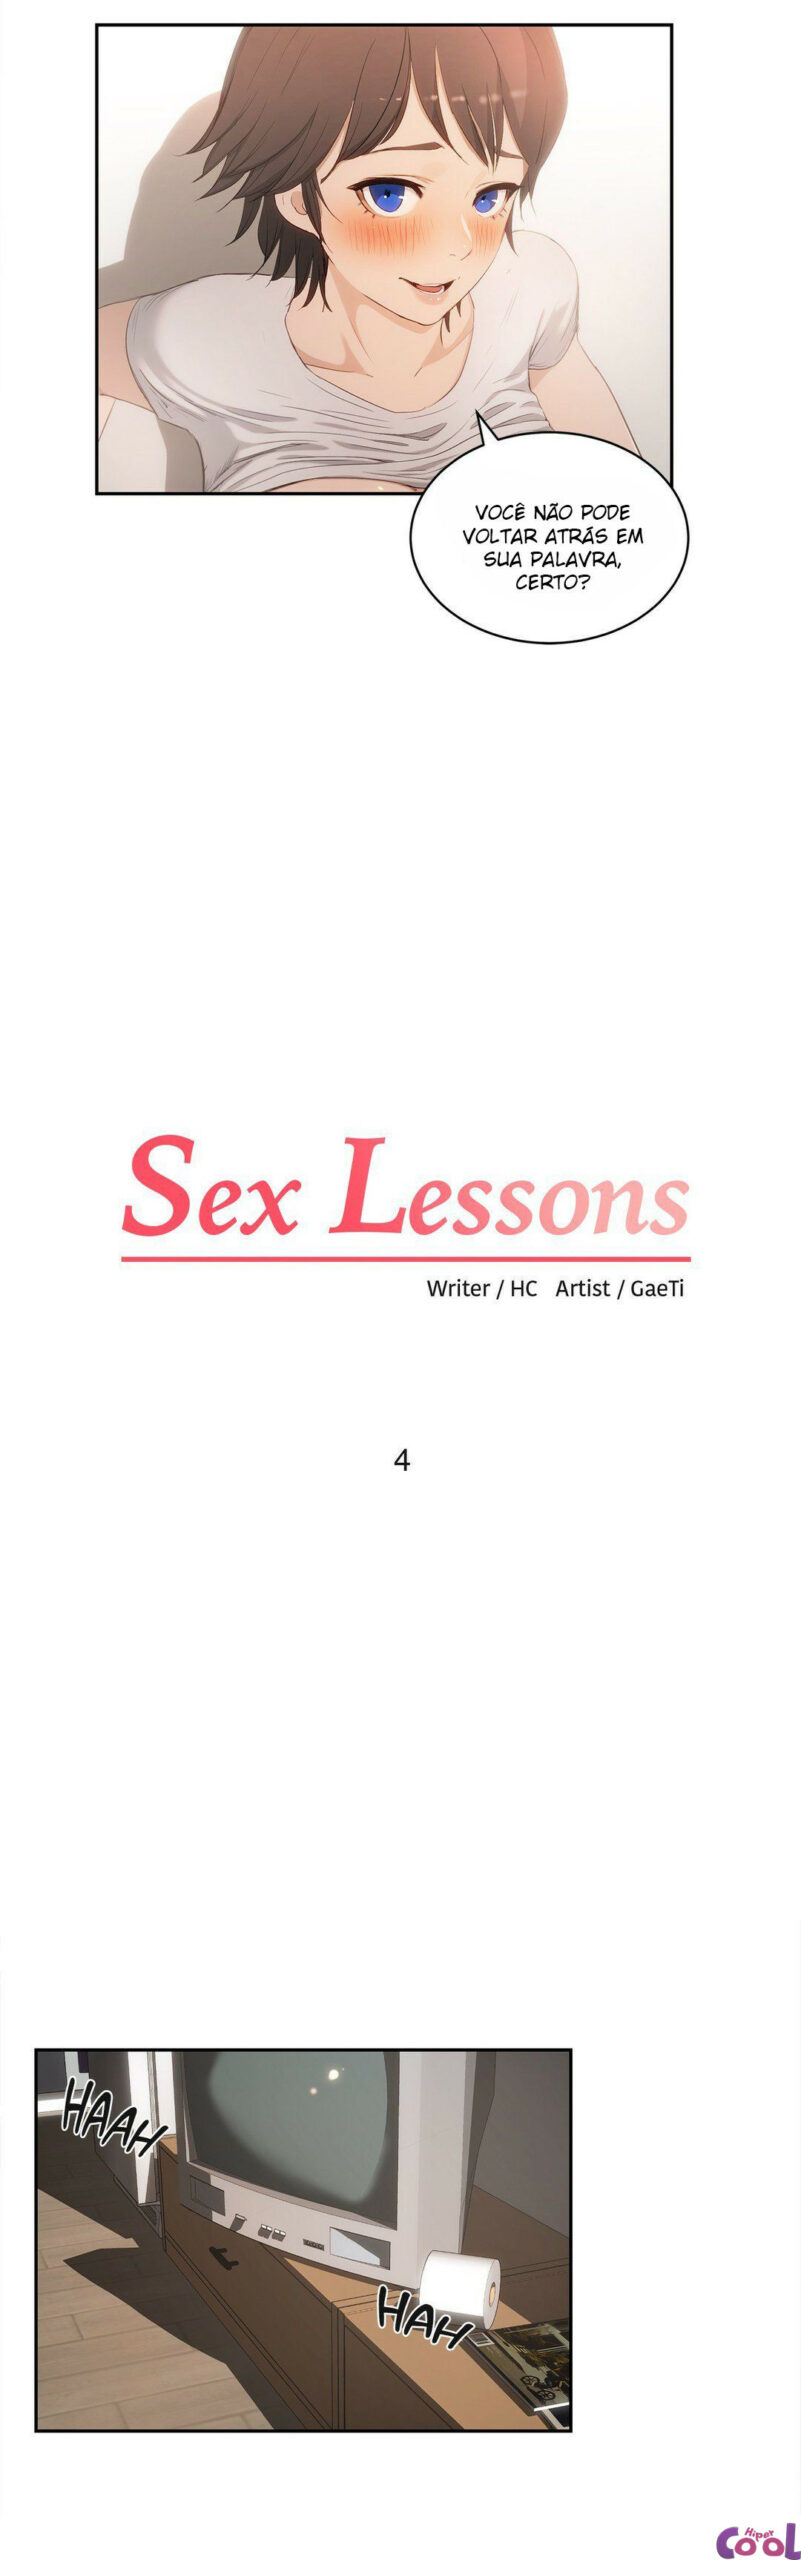 Me ensinar fazer sexo 04